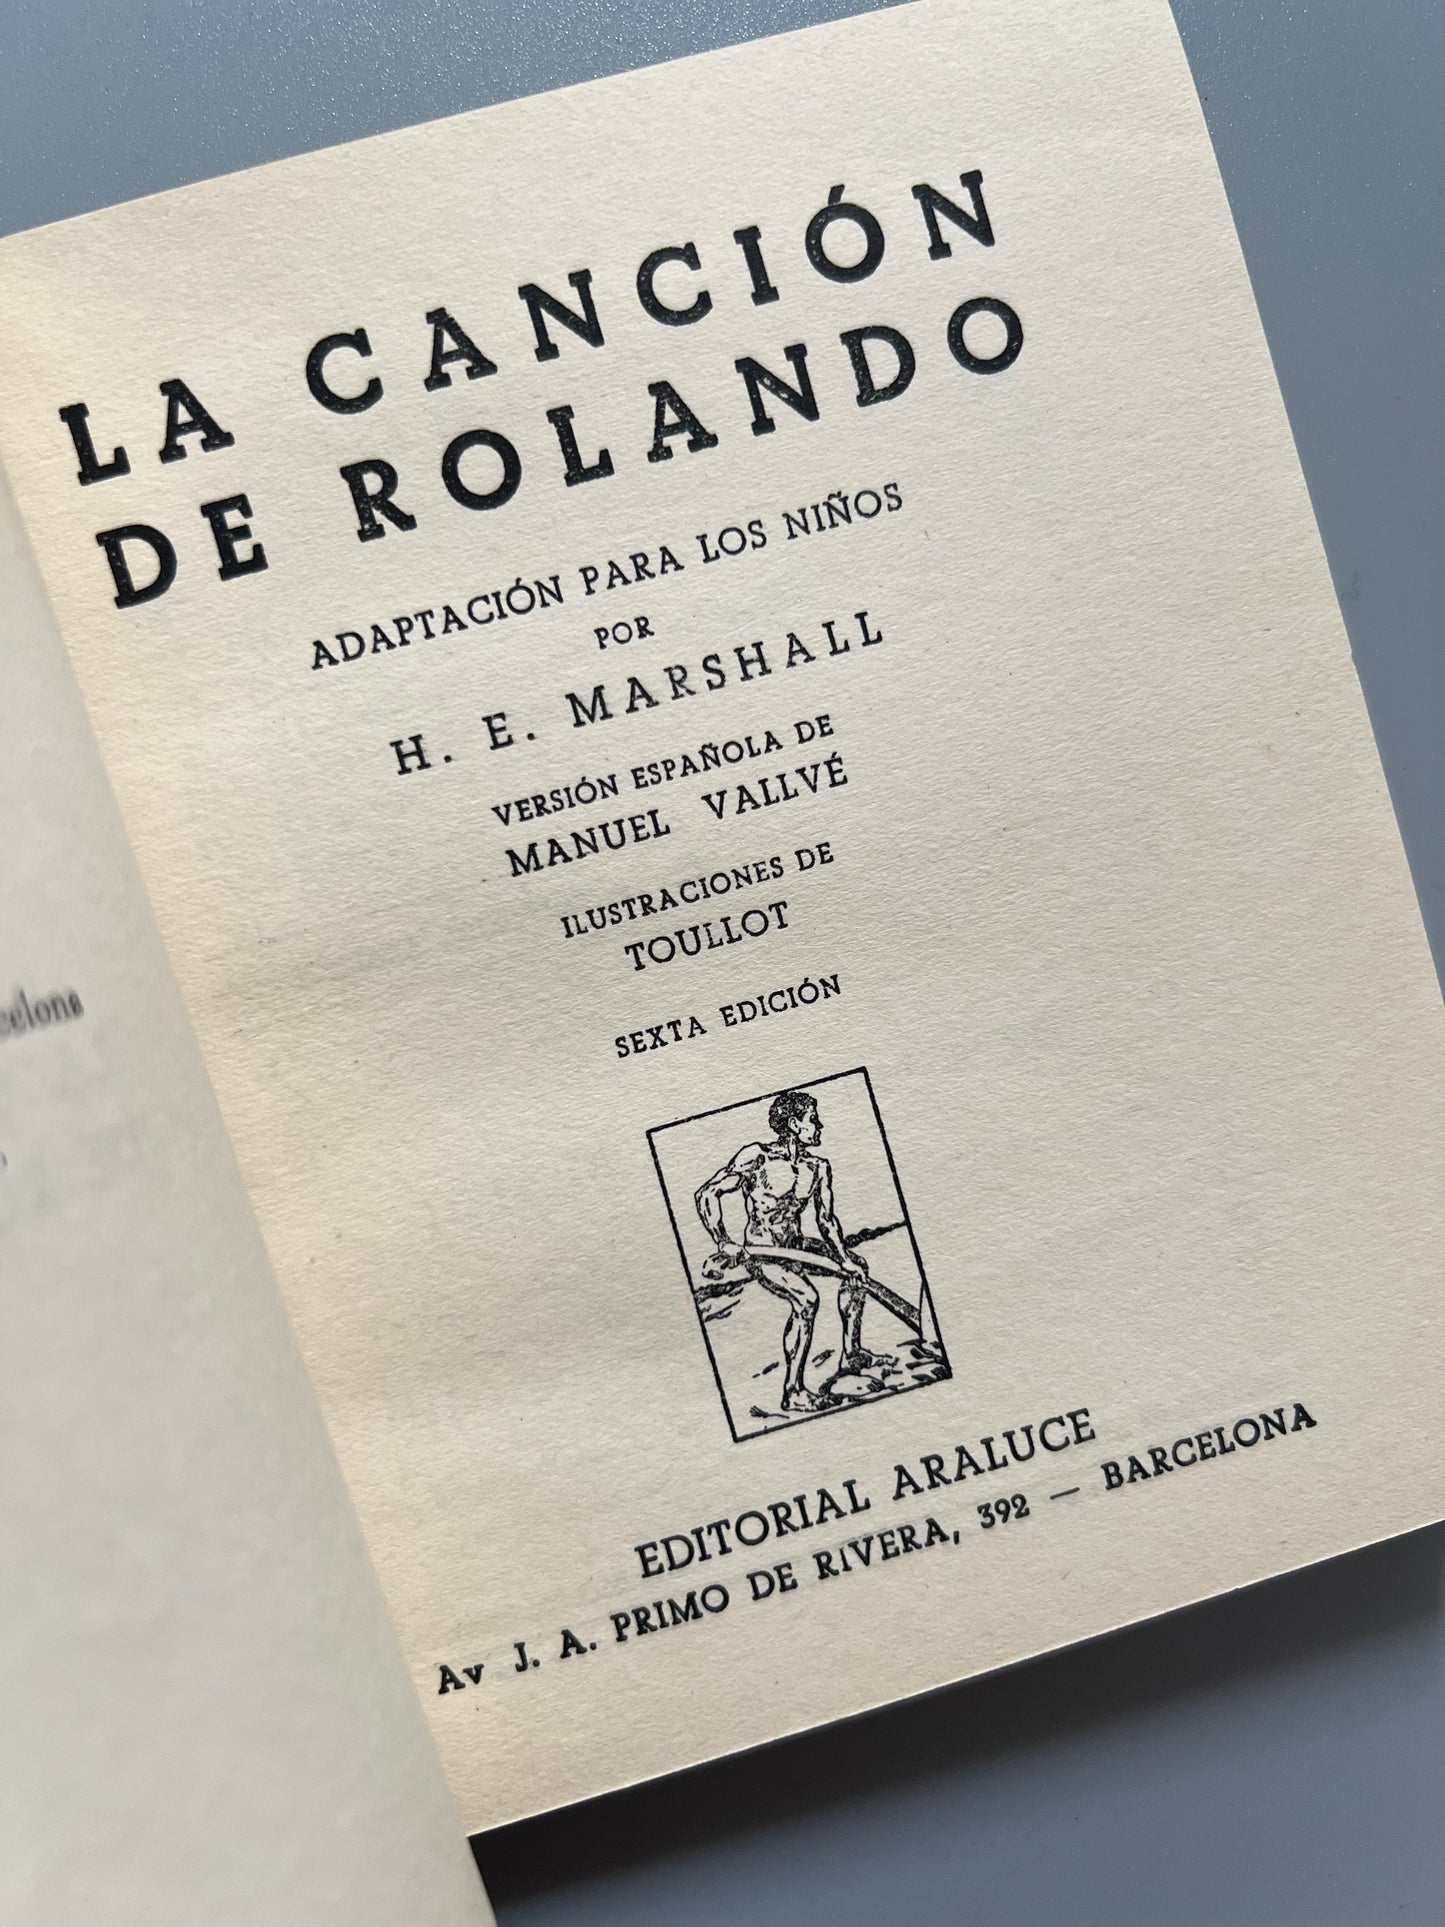 La canción de Rolando, adaptación de H. E. Marshall - Editorial Araluce, 1956